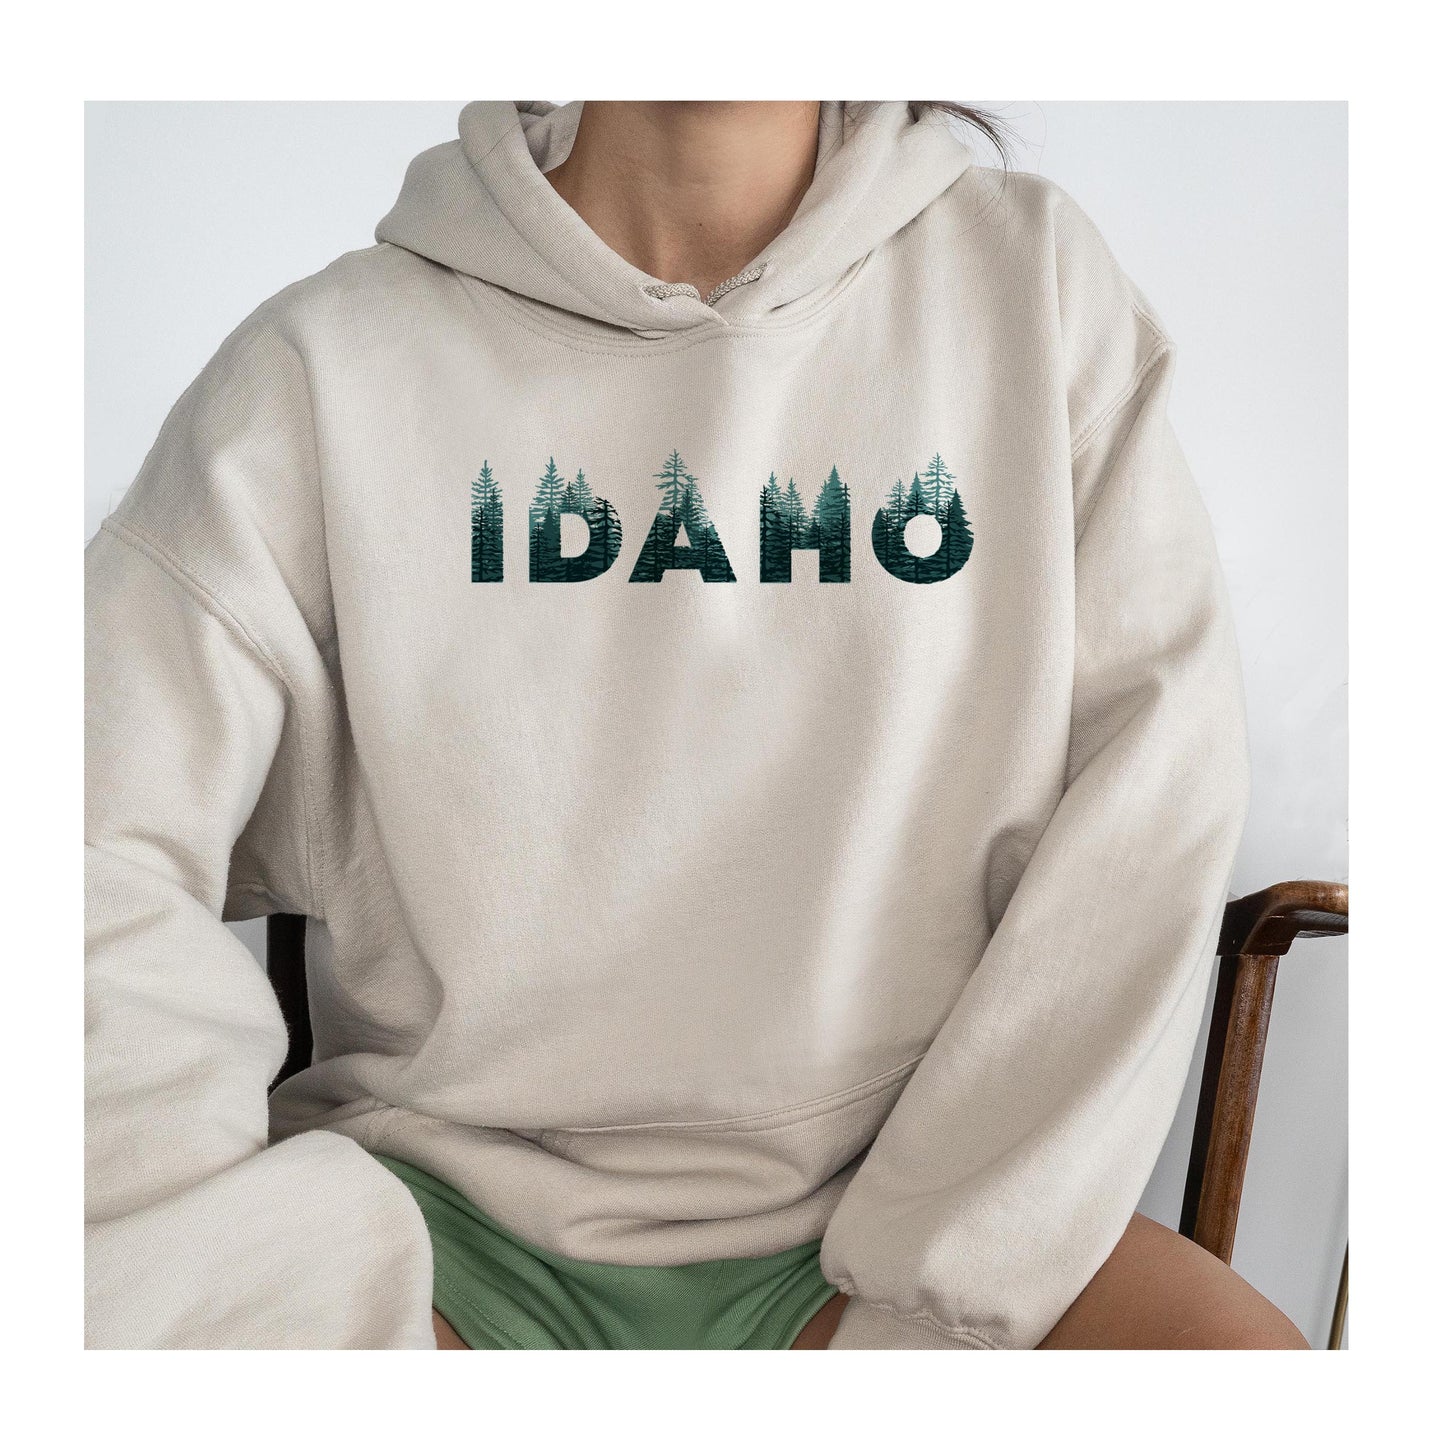 Idaho Trees Sweatshirts